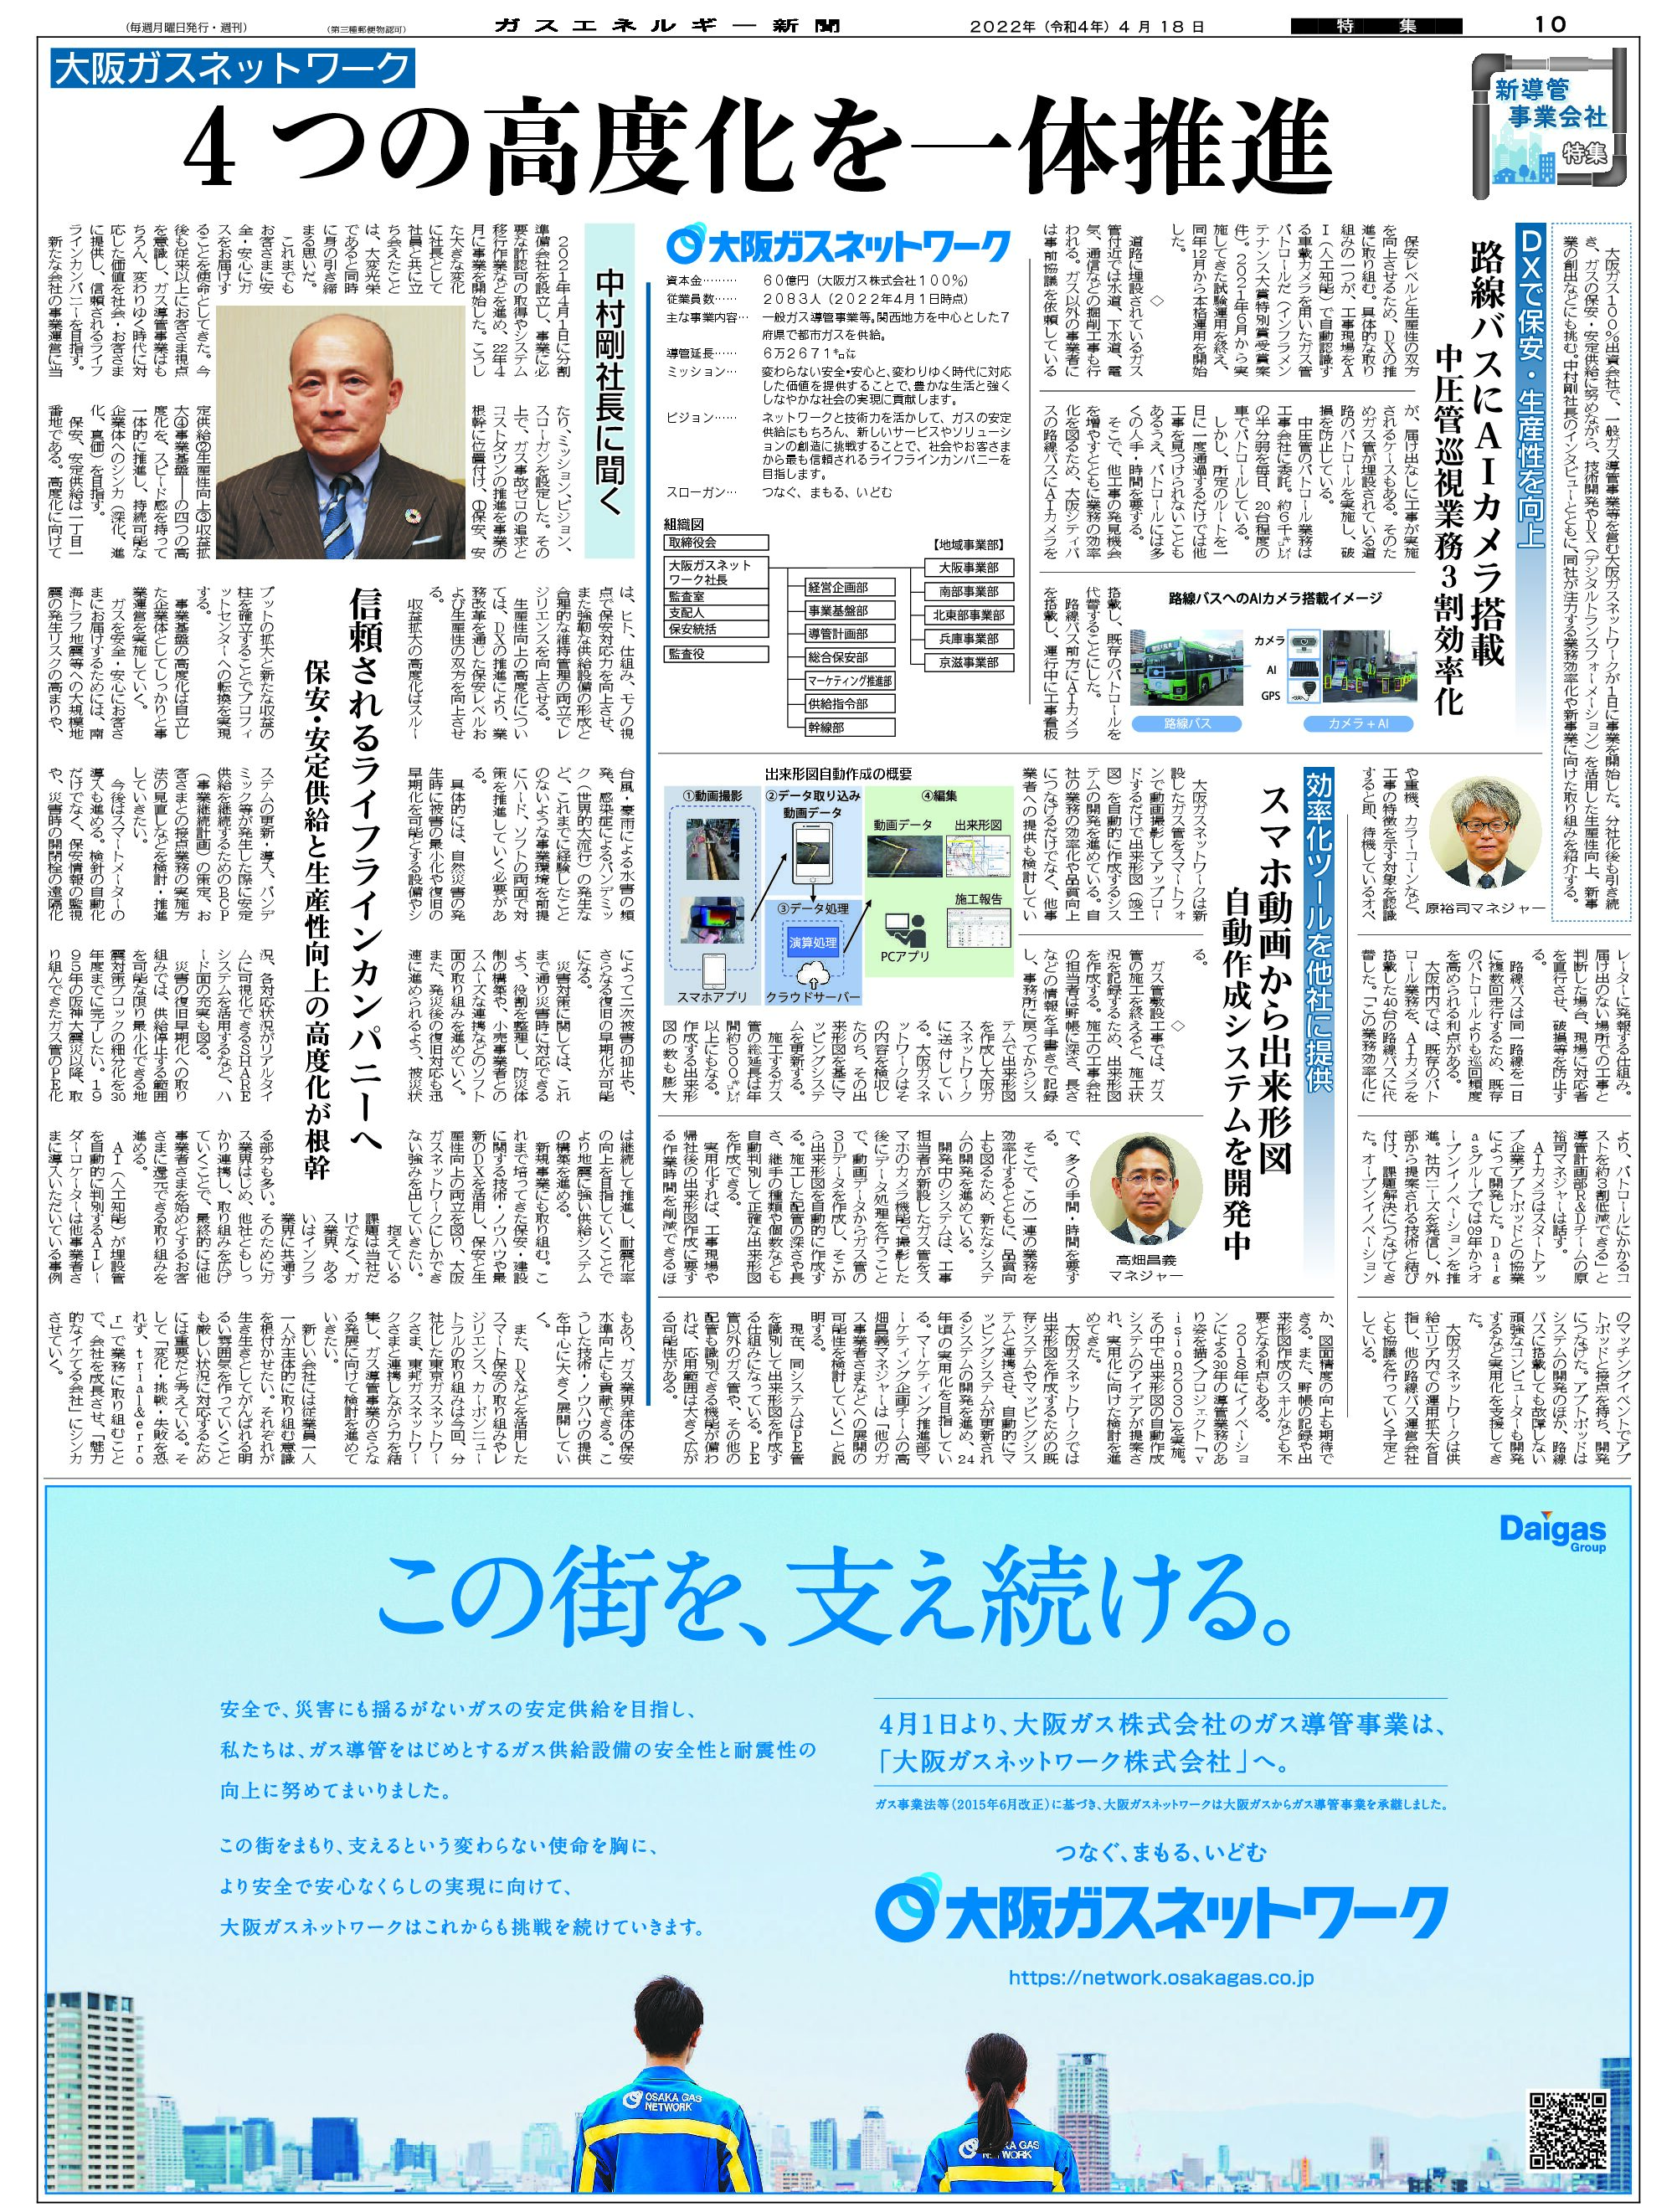 【新導管事業会社特集】4つの高度化を一体推進/大阪ガスネットワーク